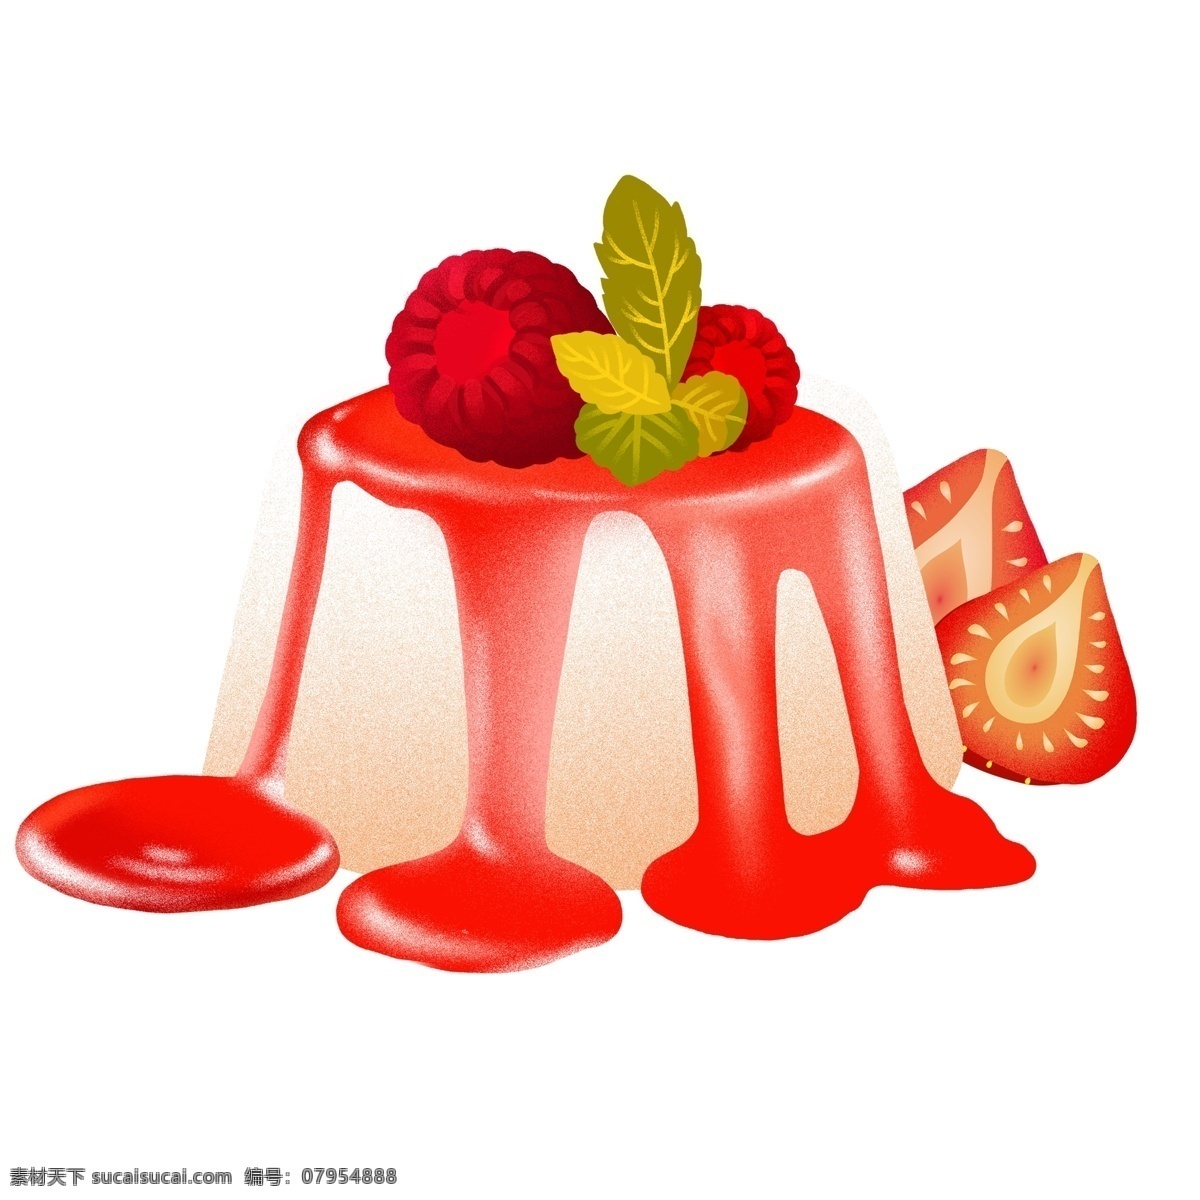 美味 草莓 布丁 手绘 美食 甜点 插画 食物 果酱 psd元素